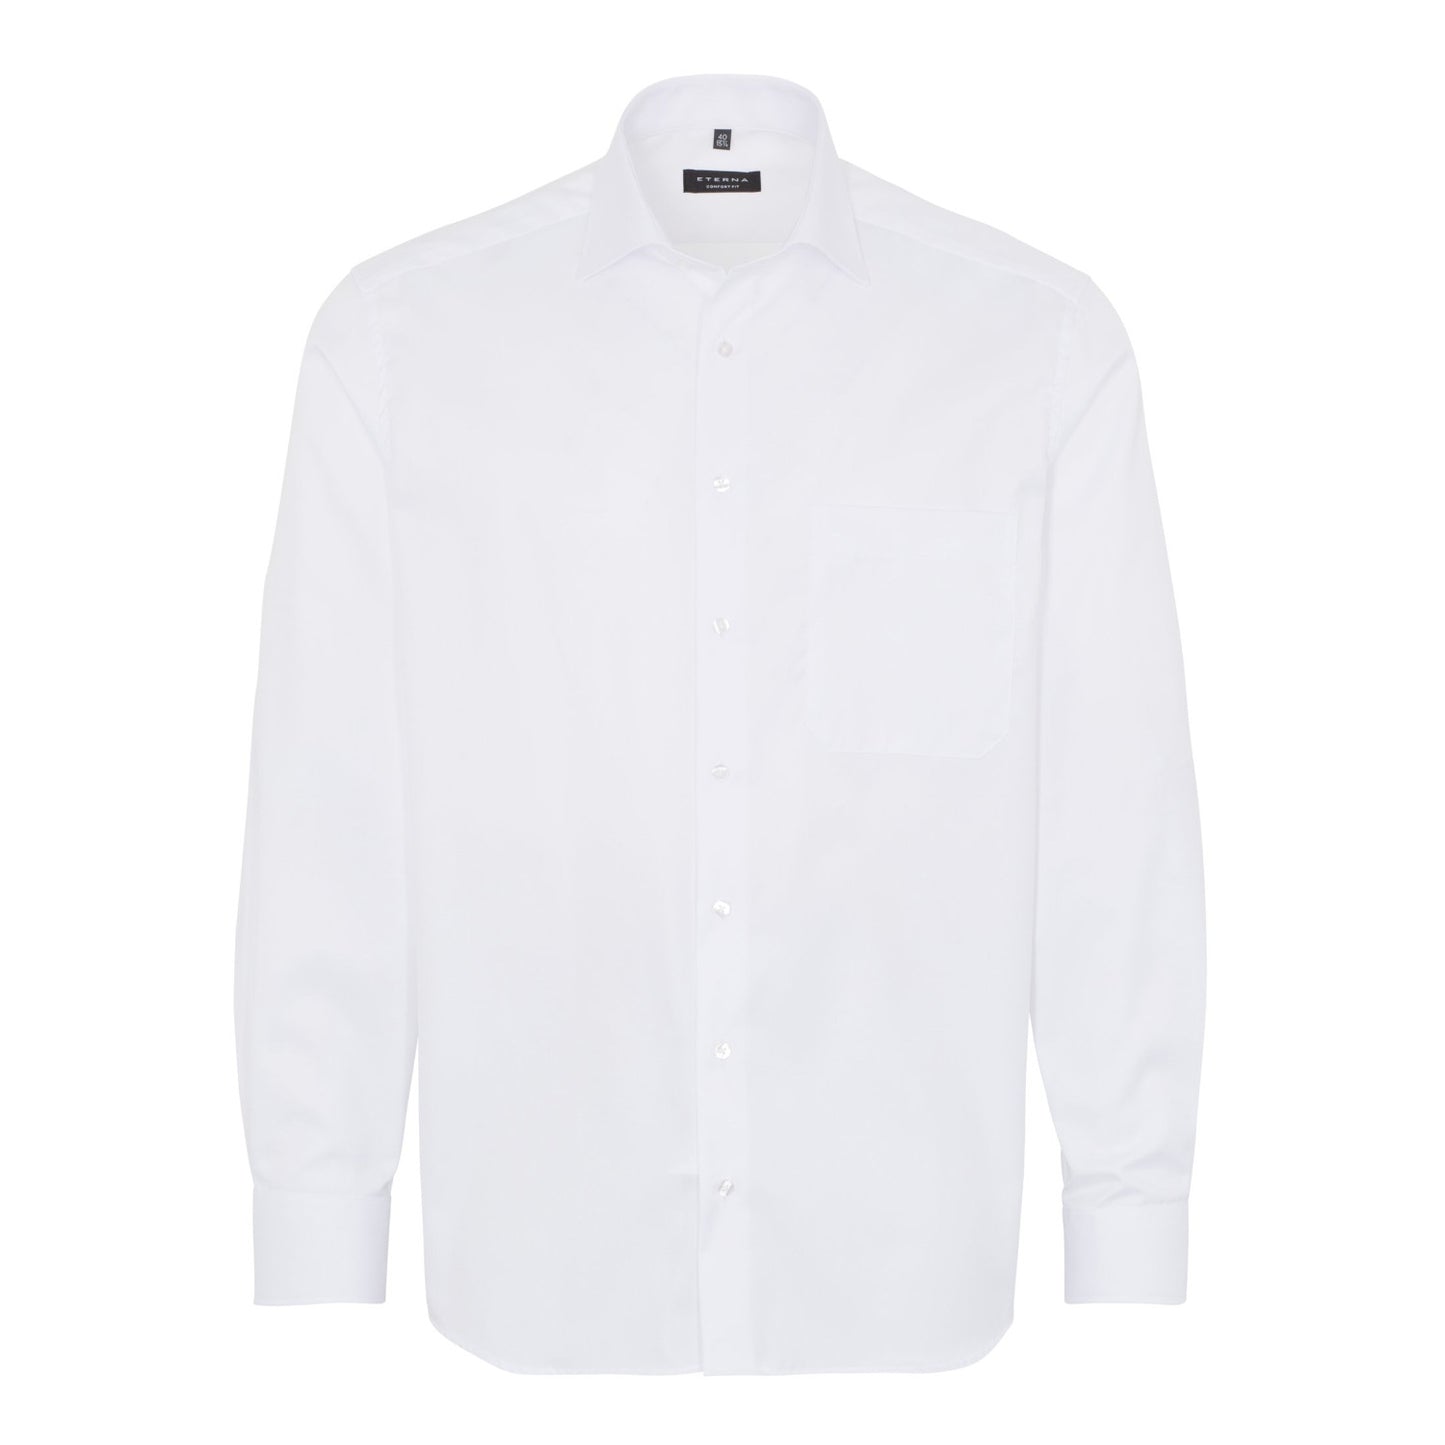 Eterna 8817 00 E19K White Comfort Fit Long Sleeve Shirt